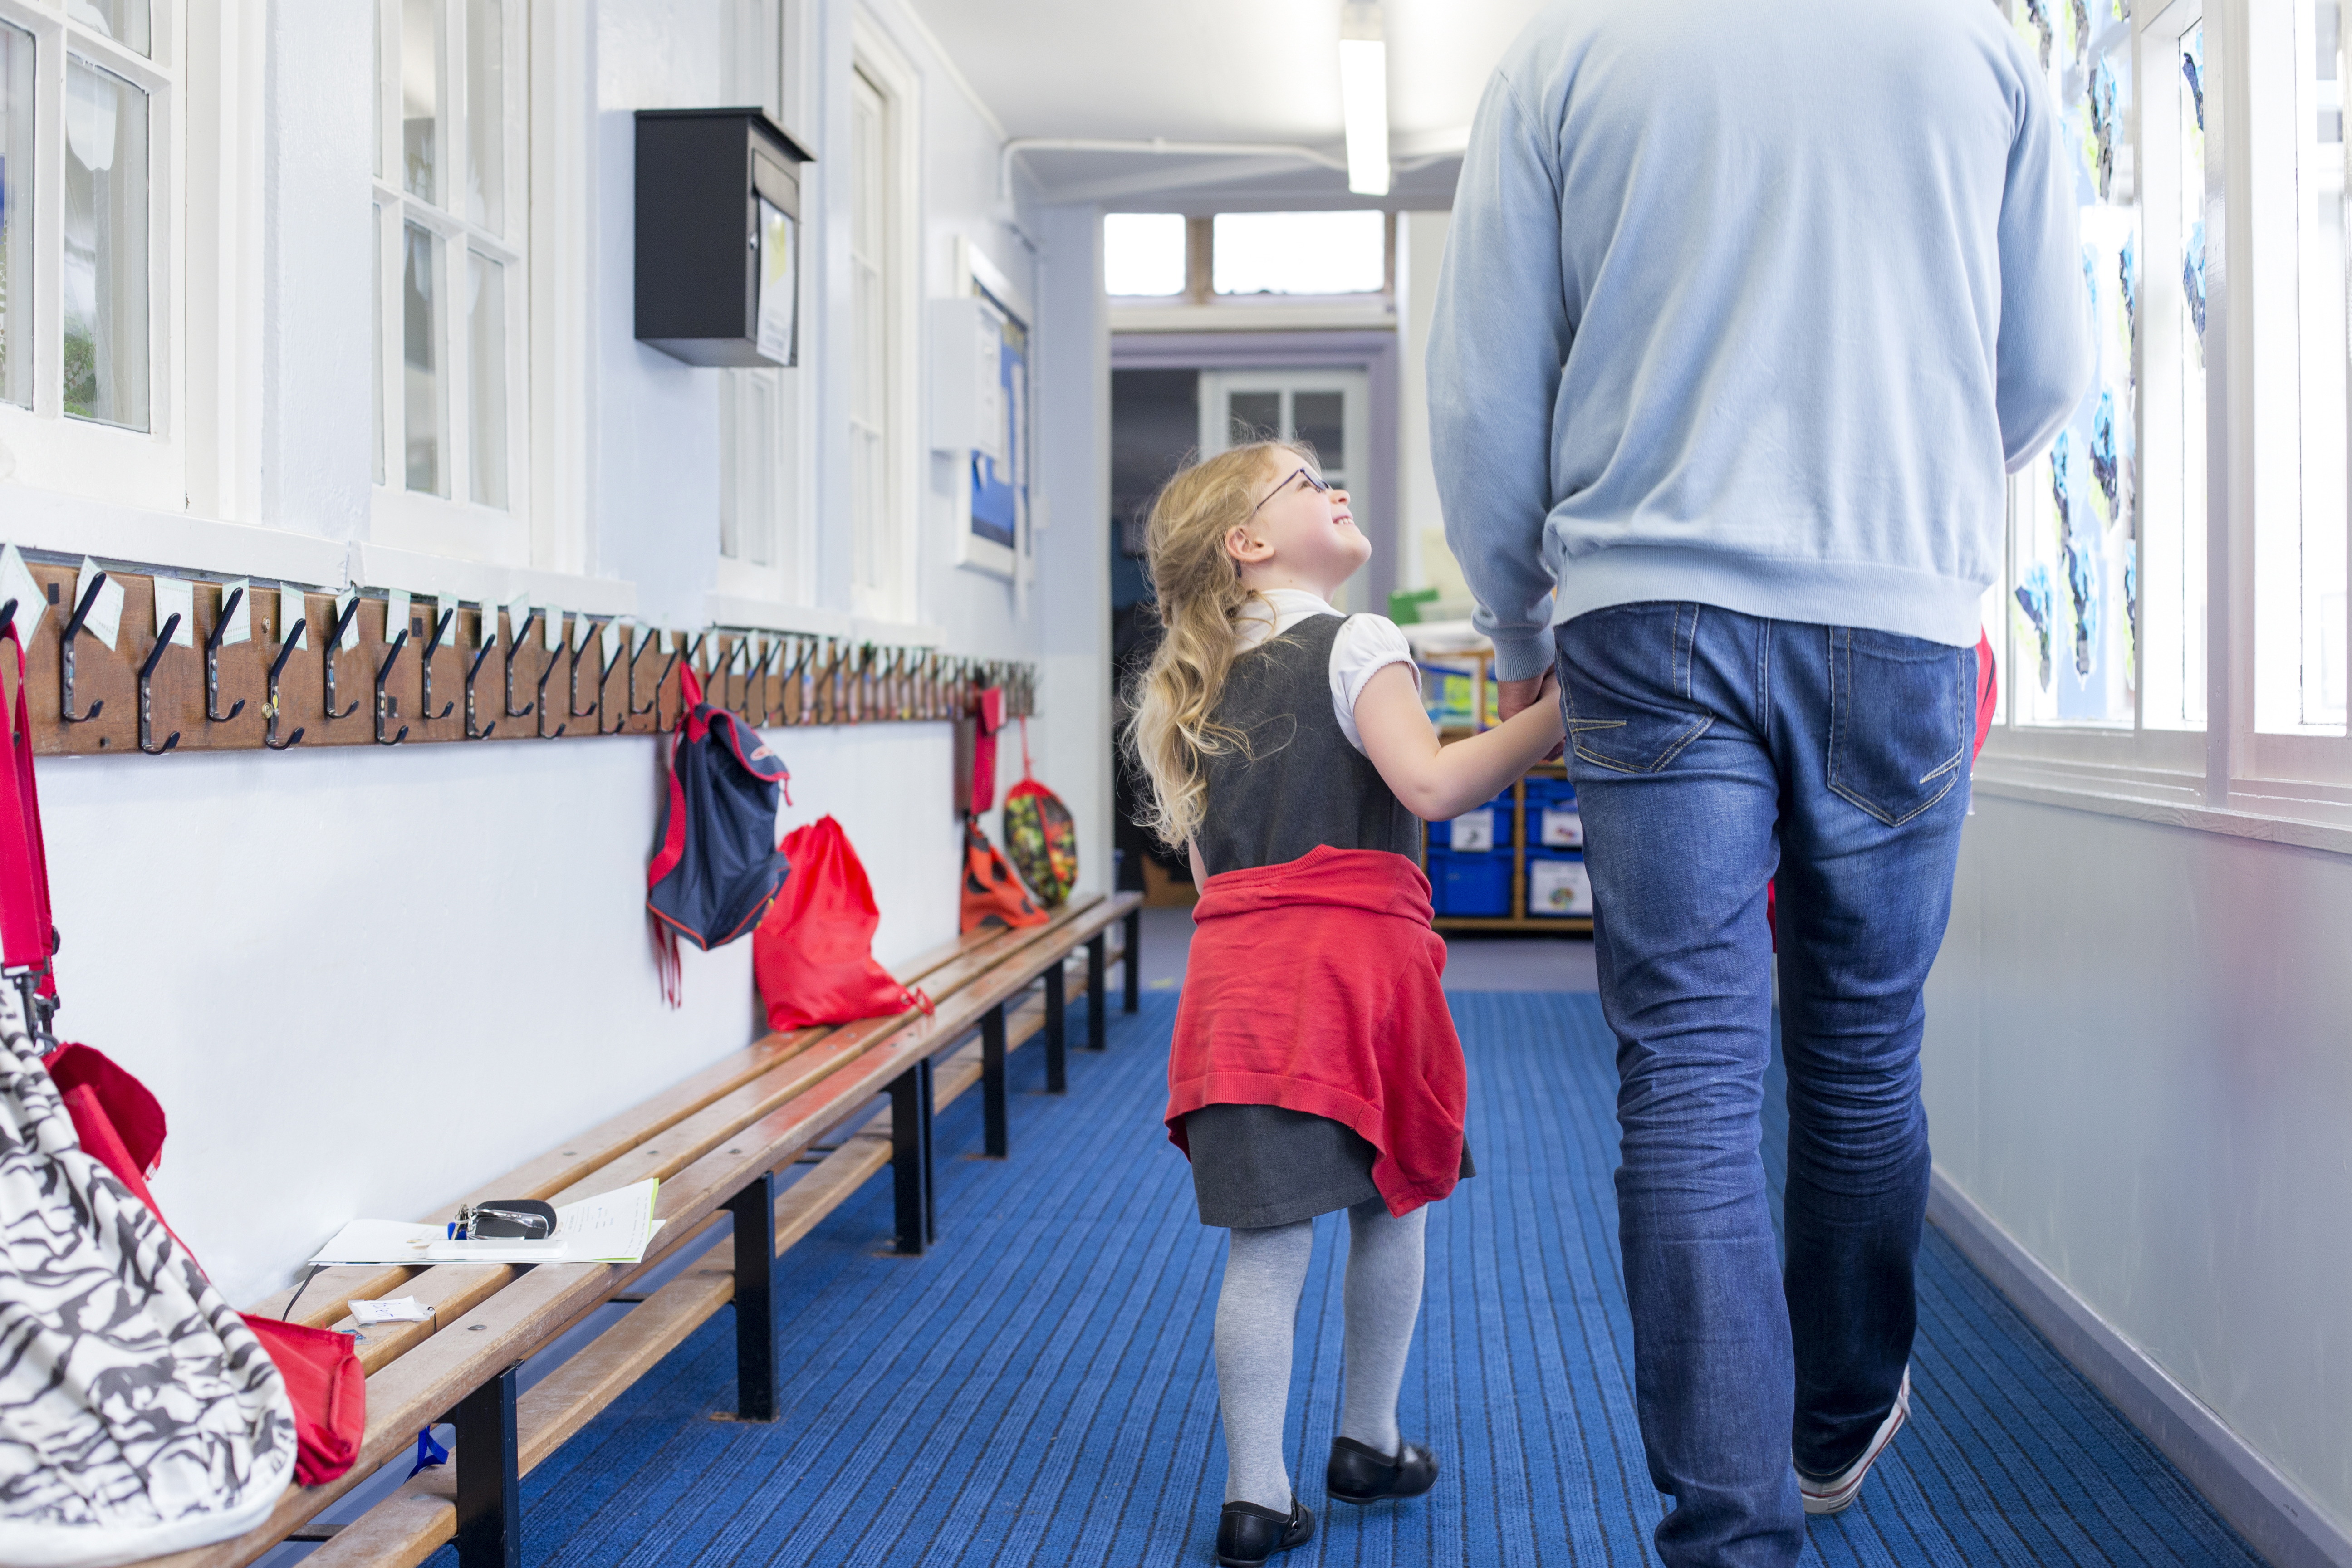 Kleines Mädchen, das lächelnd die Hand eines Mannes hält, während sie einen Korridor entlanggehen | Quelle: Shutterstock